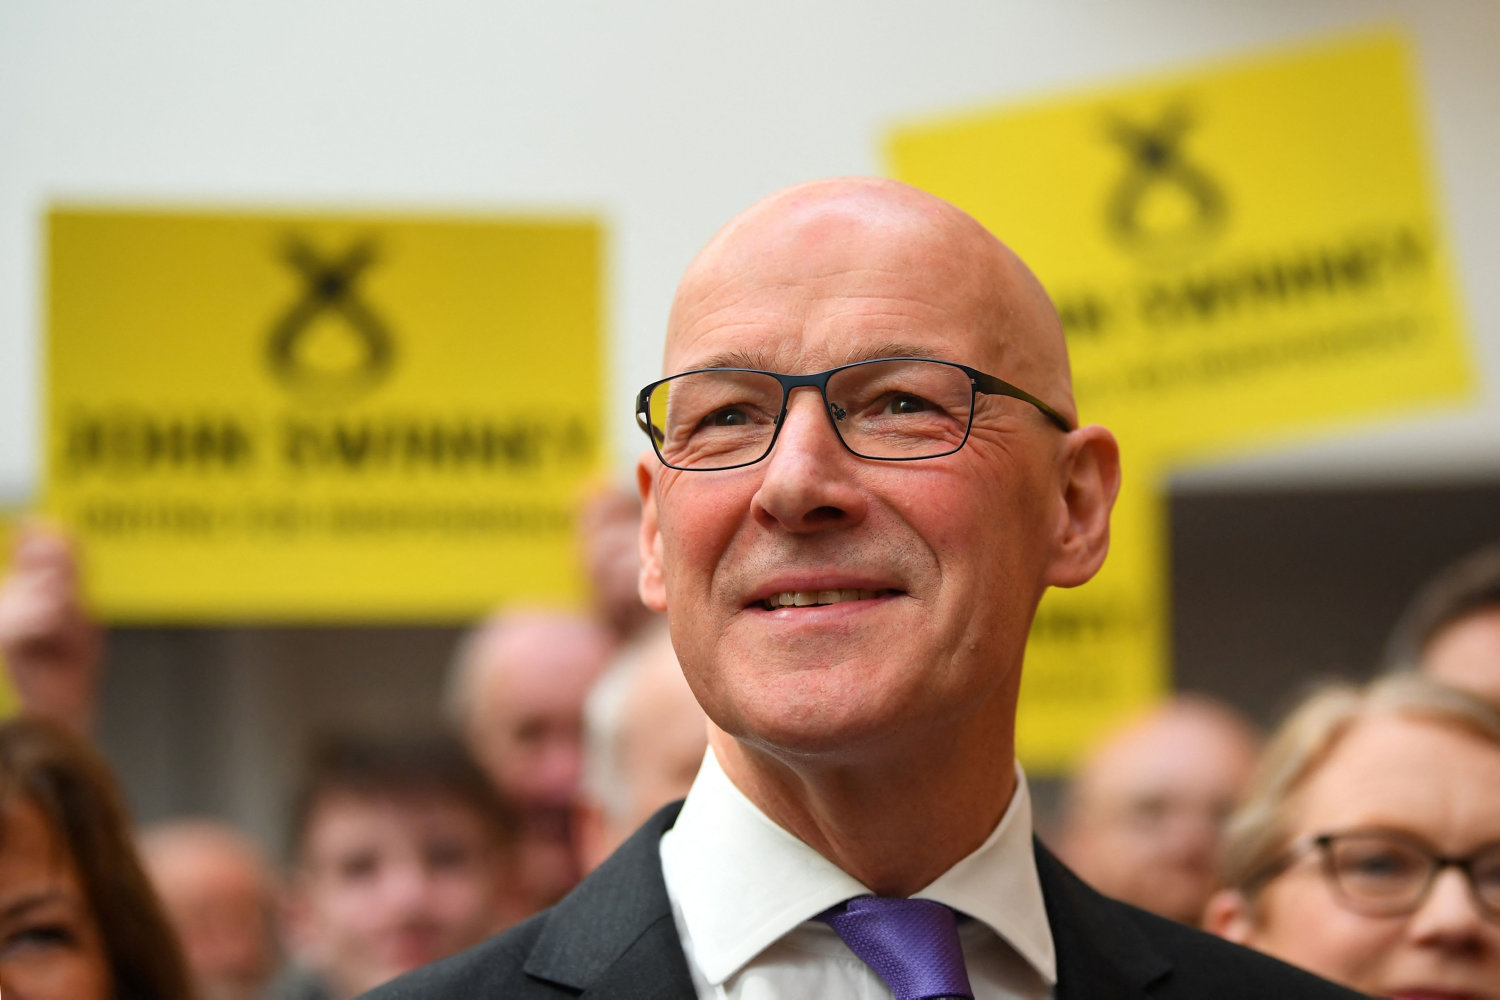 regeringsparti vælger partiveteran som ny leder i skotland